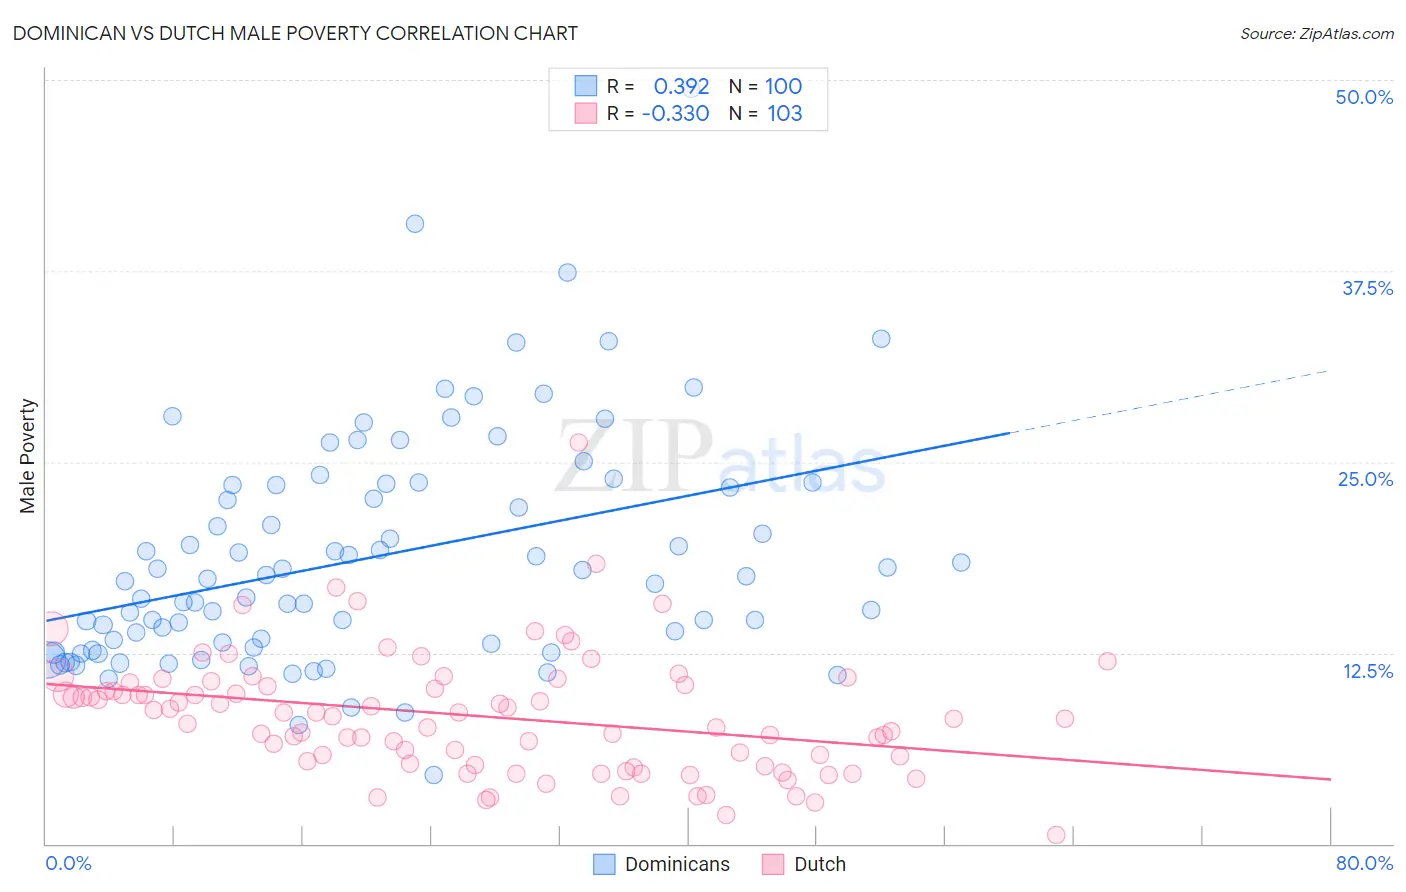 Dominican vs Dutch Male Poverty